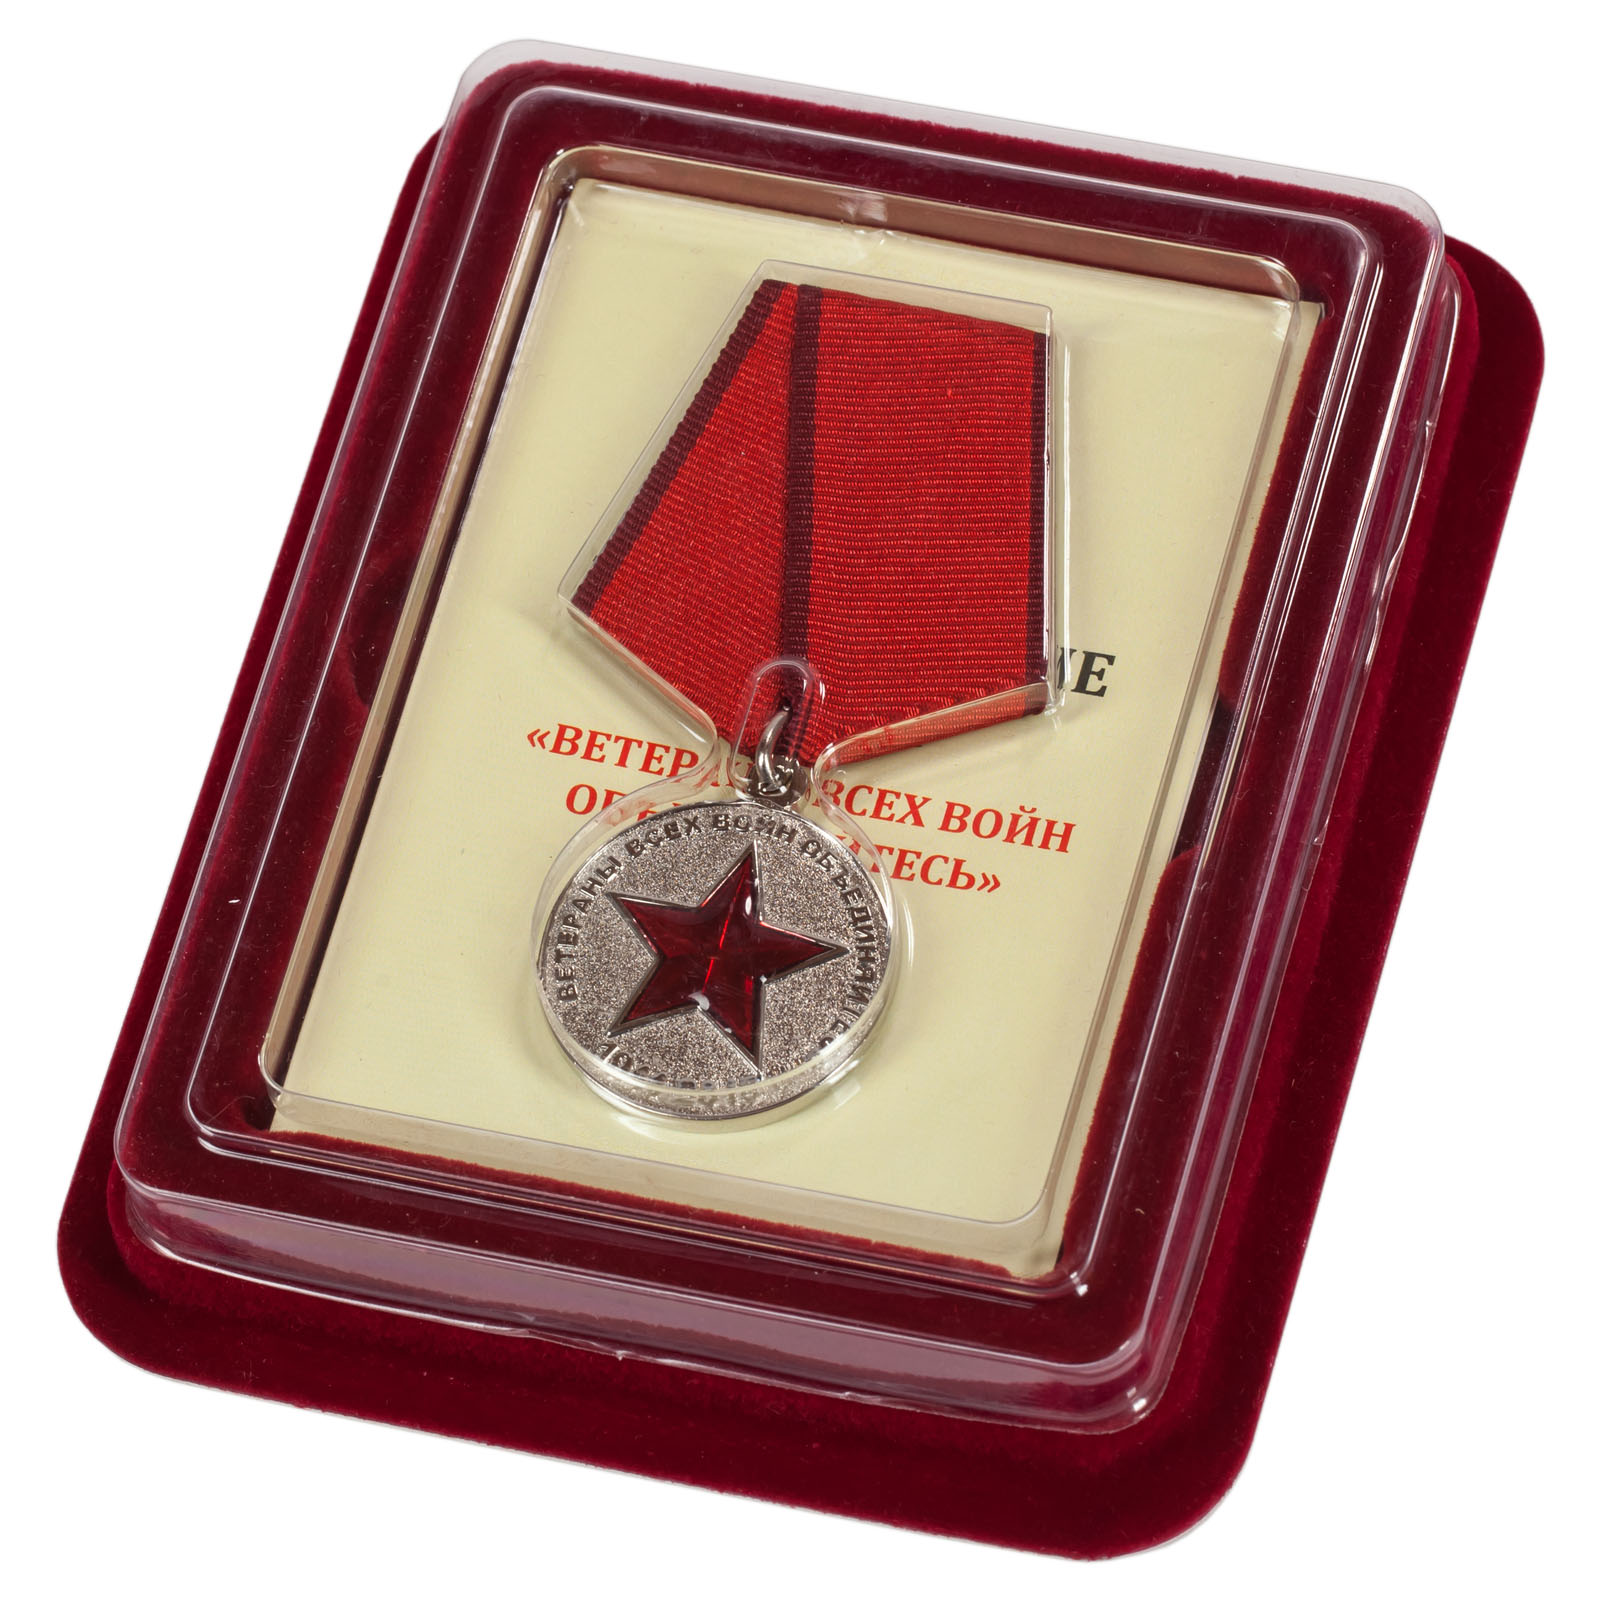 Купить медаль "Ветераны всех войн объединяйтесь" в наградном футляре